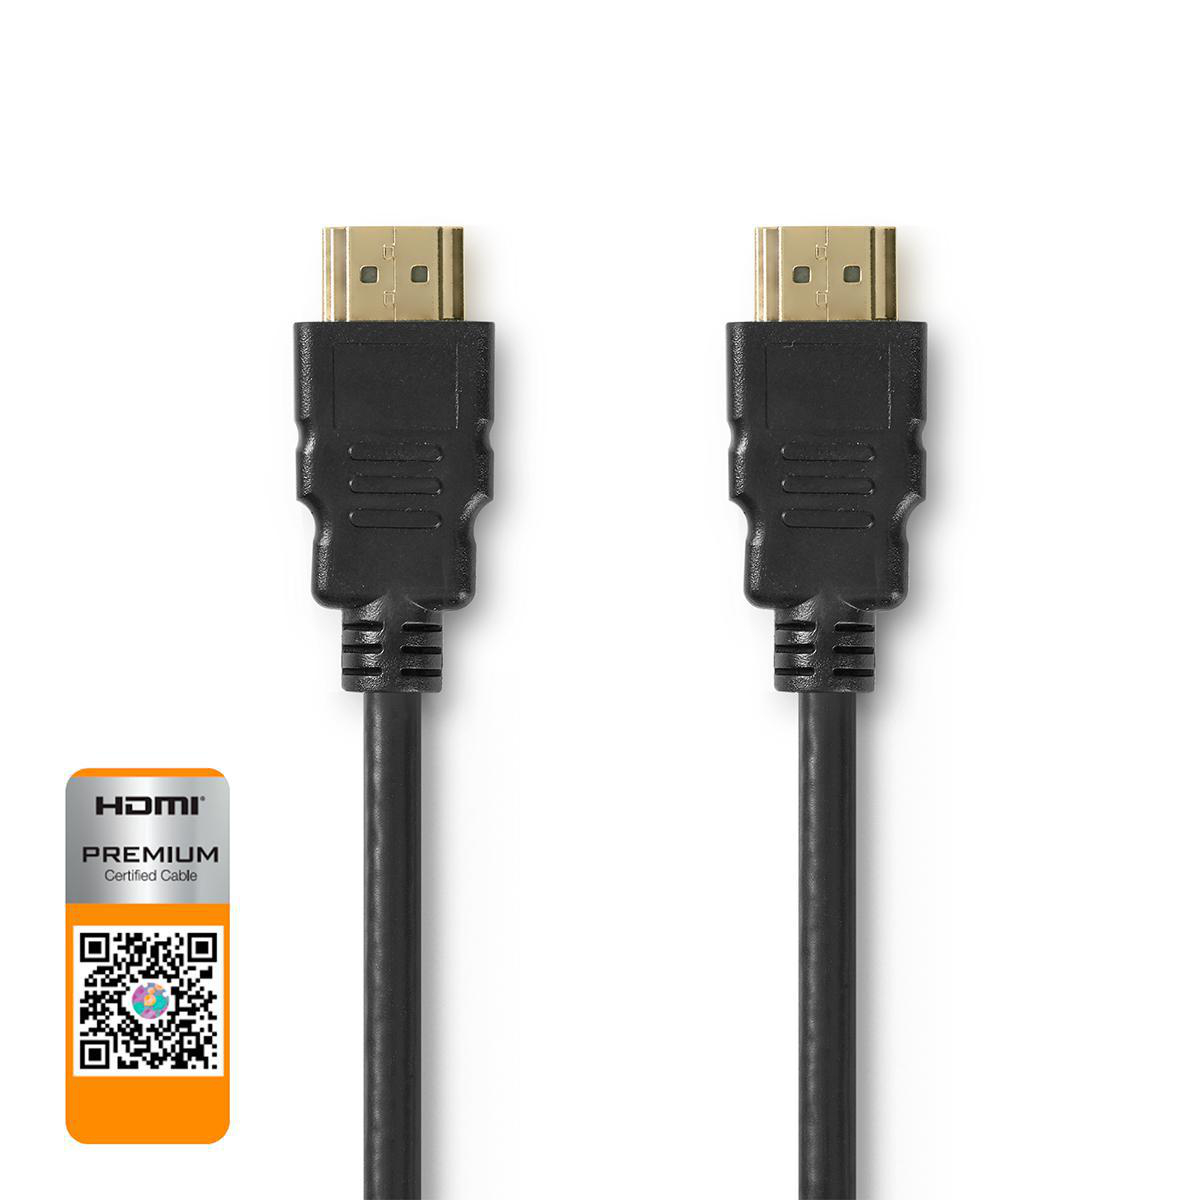 Nedis prémiový High Speed HDMI 2.0b kabel s ethernetem, 4K až 18 GB/s, zástrčka HDMI - zástrčka HDMI, 5 m, černá (CVGP34050BK50)